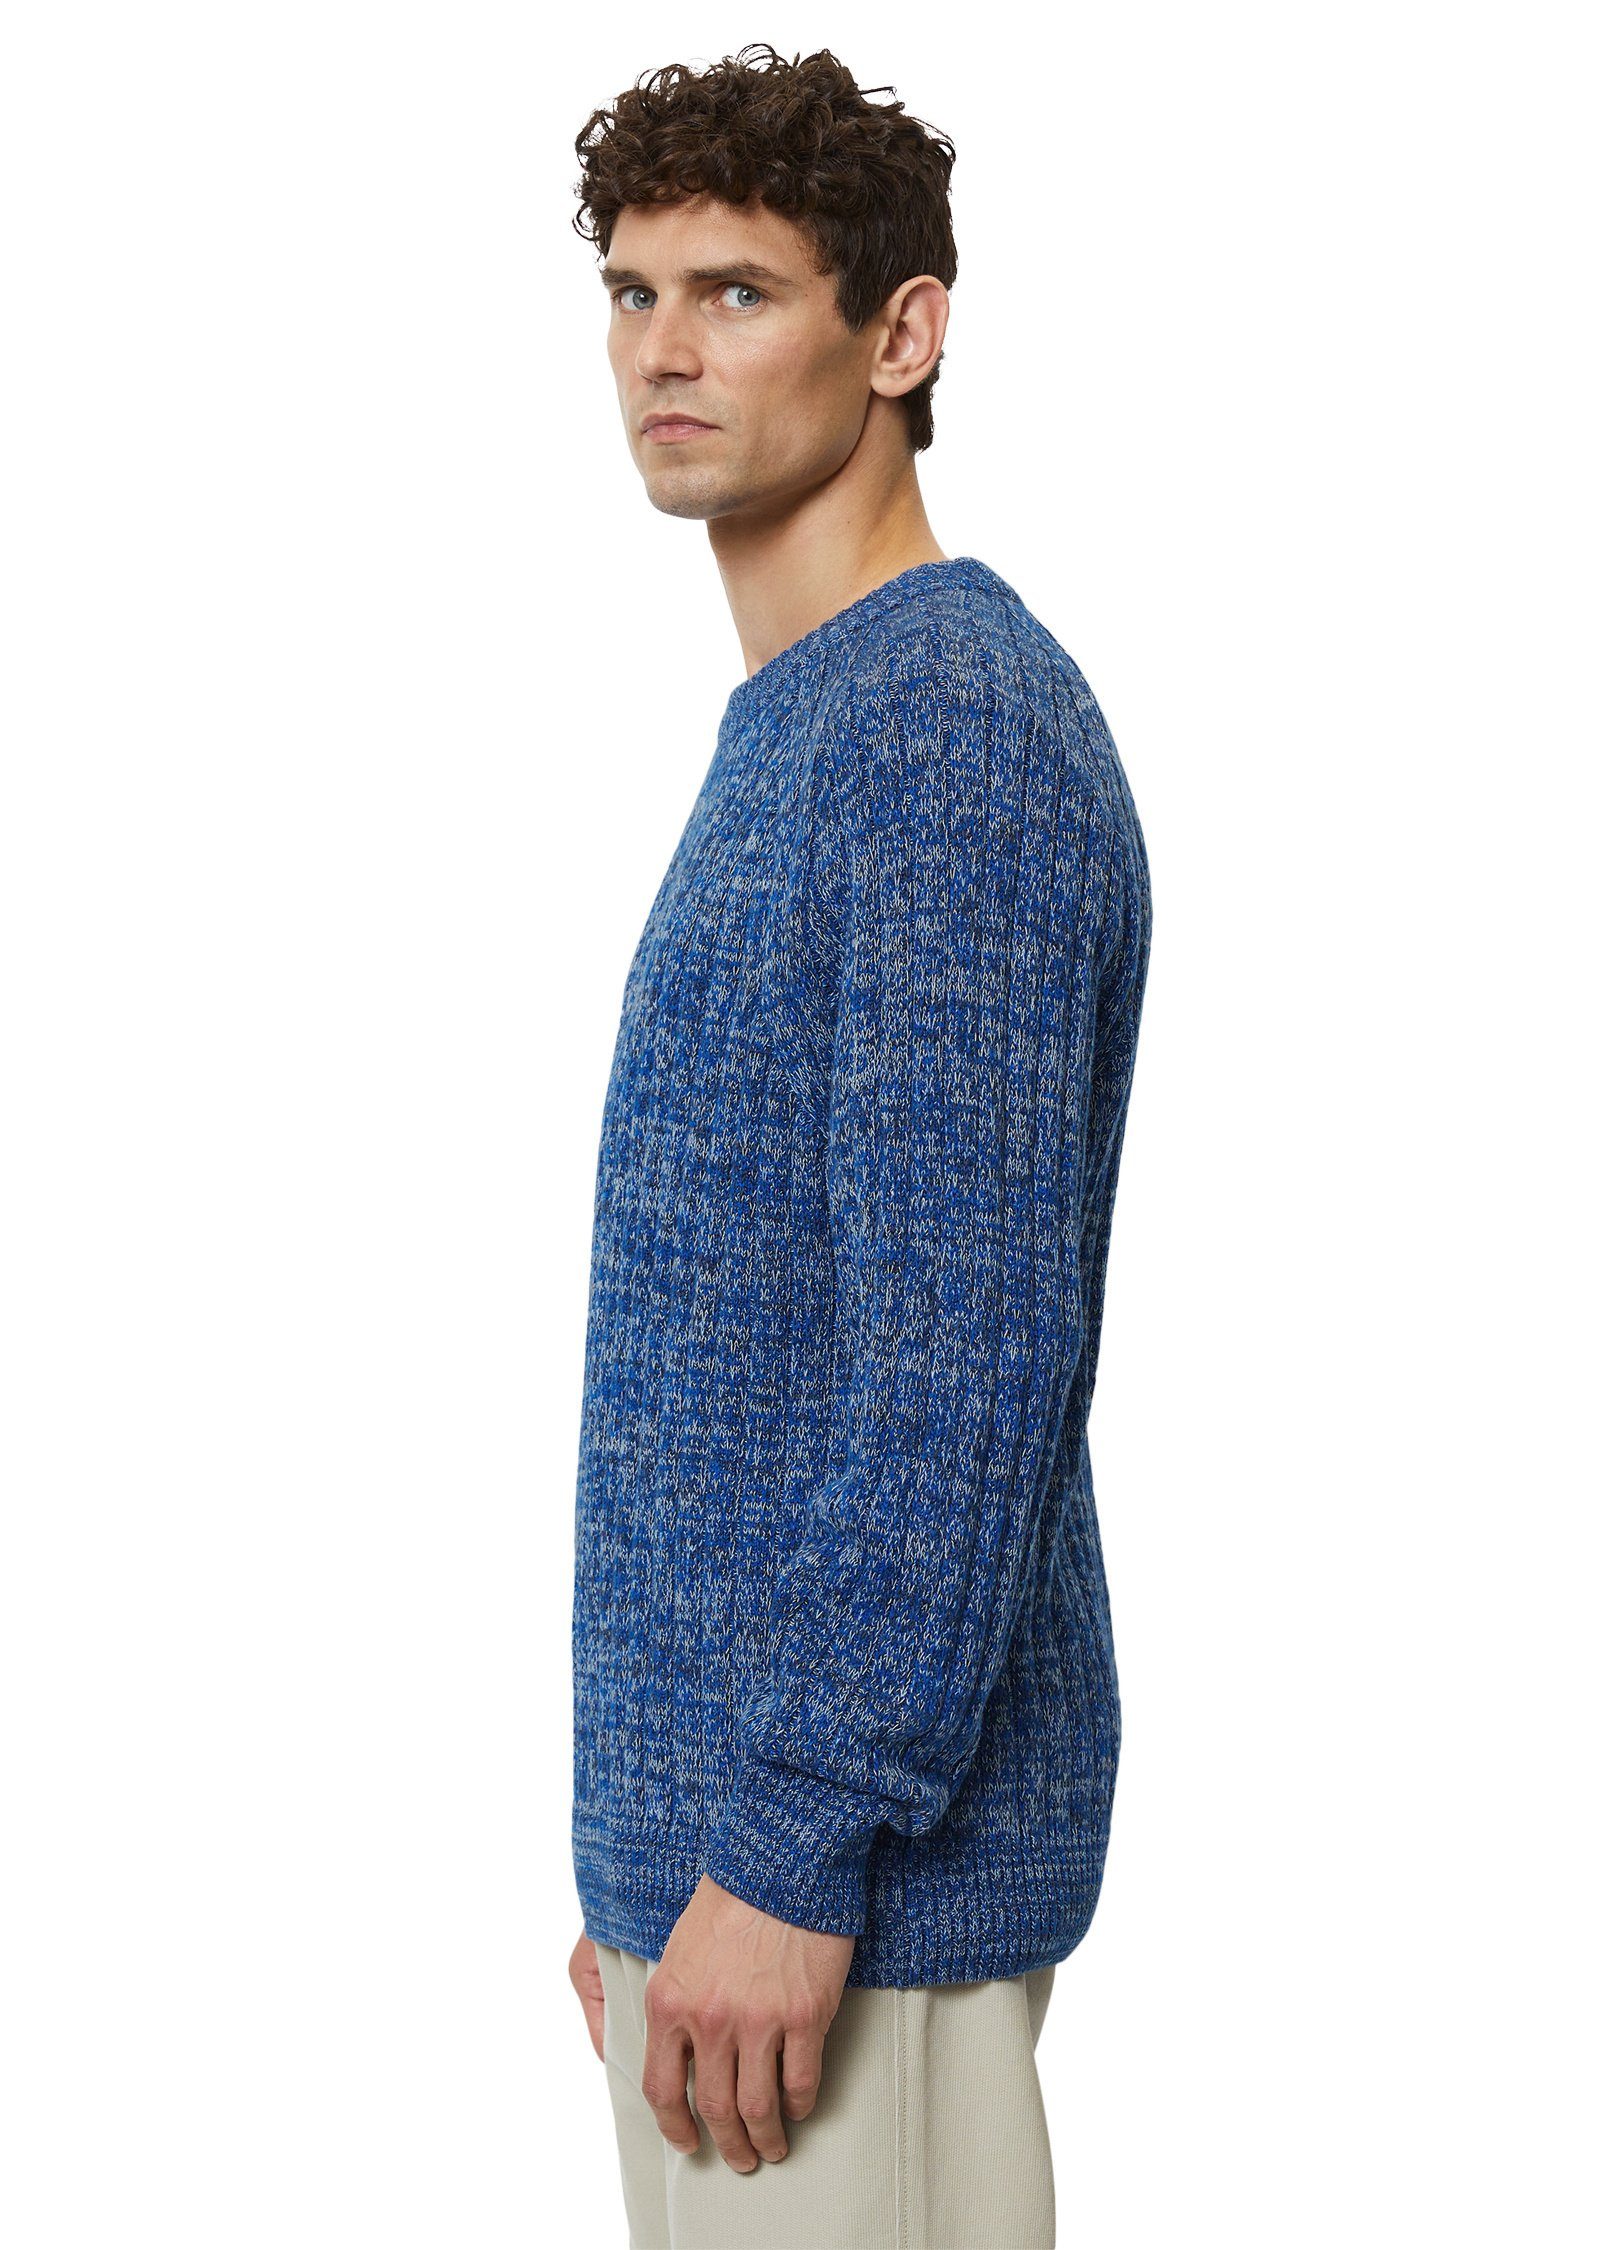 Marc O'Polo Bio-Baumwolle reiner Rundhalspullover blau aus